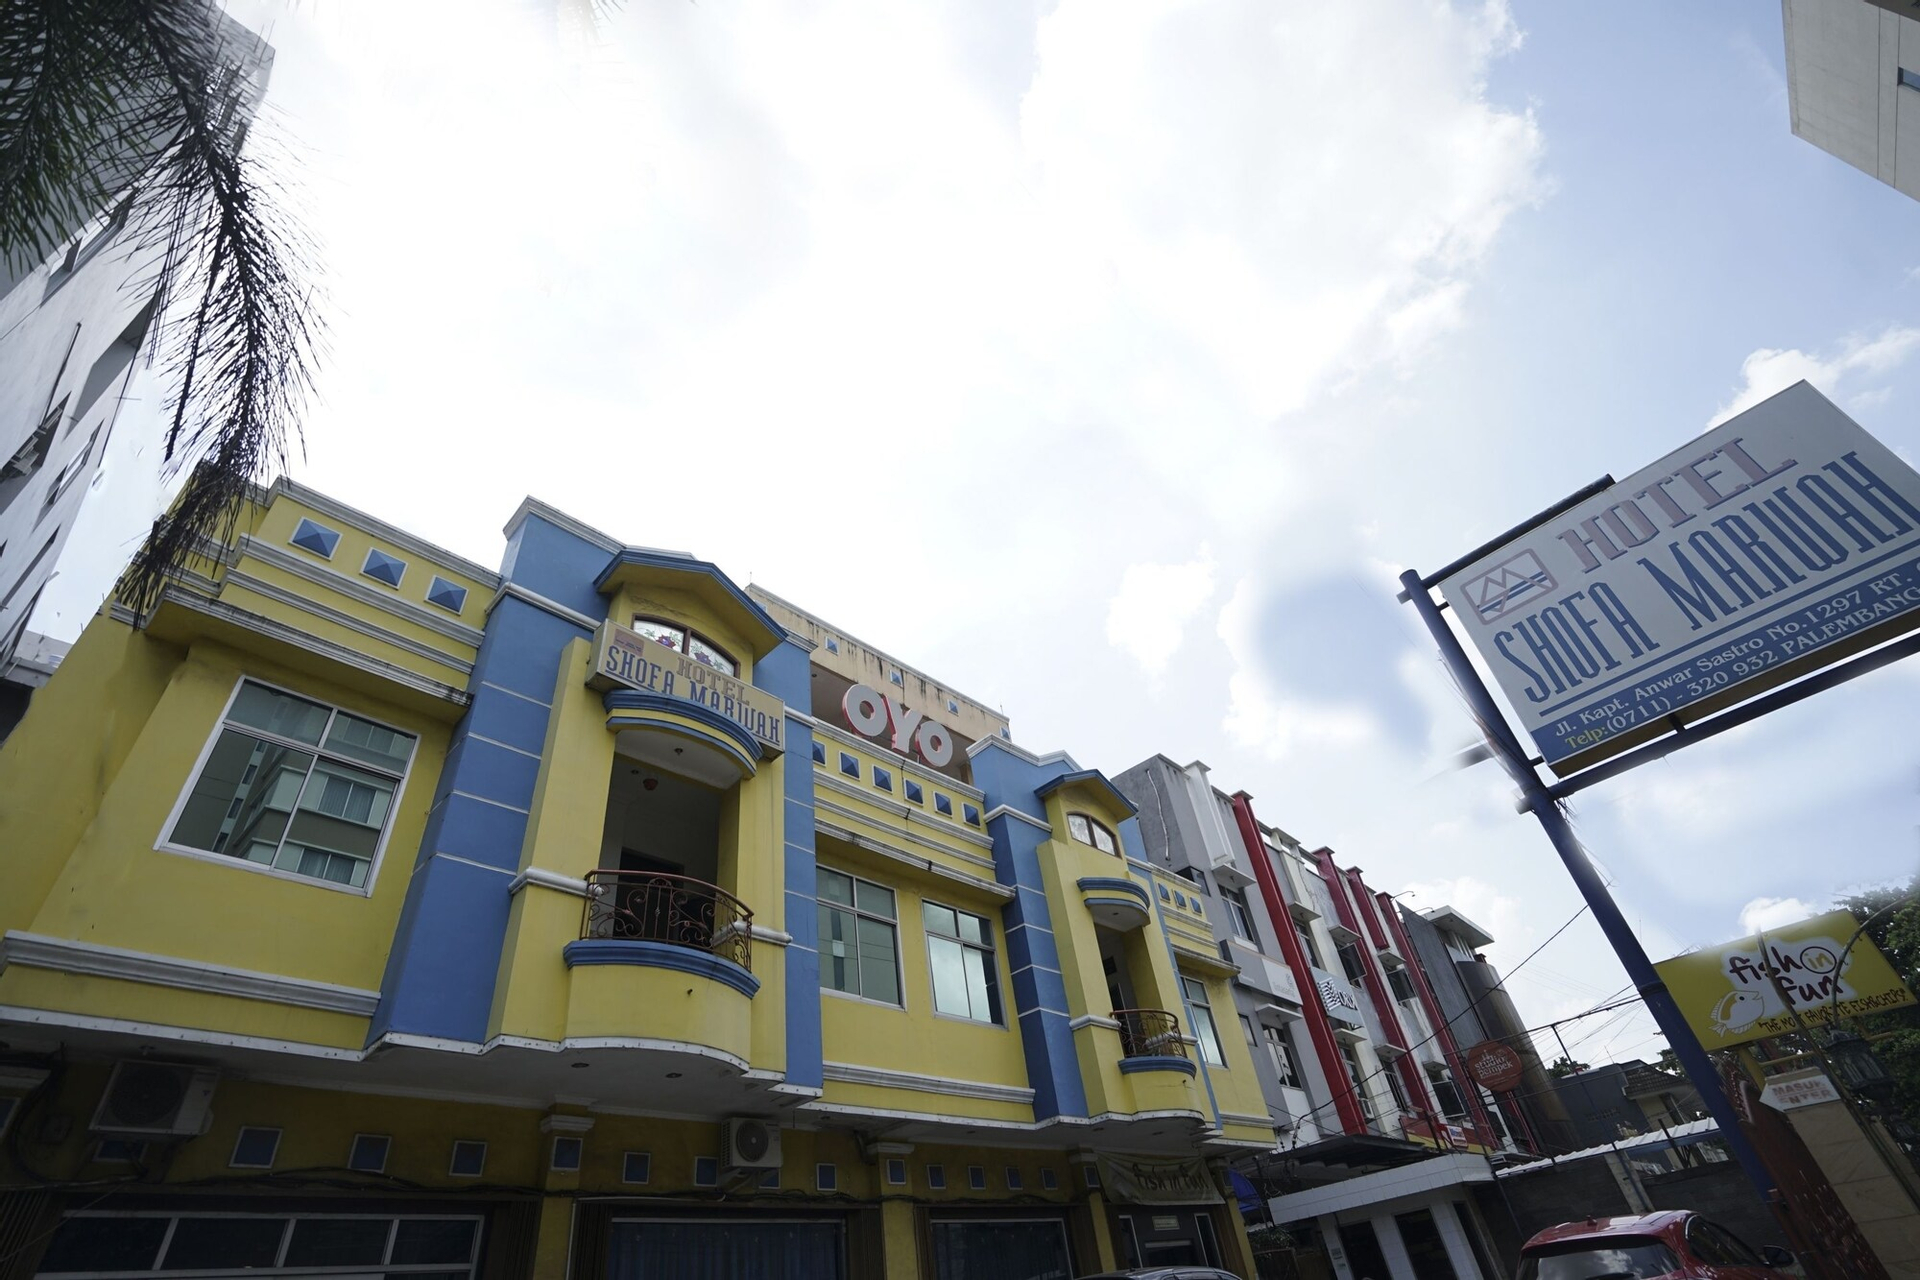 Exterior & Views 2, OYO 1173 Hotel Shofa Marwah, Palembang